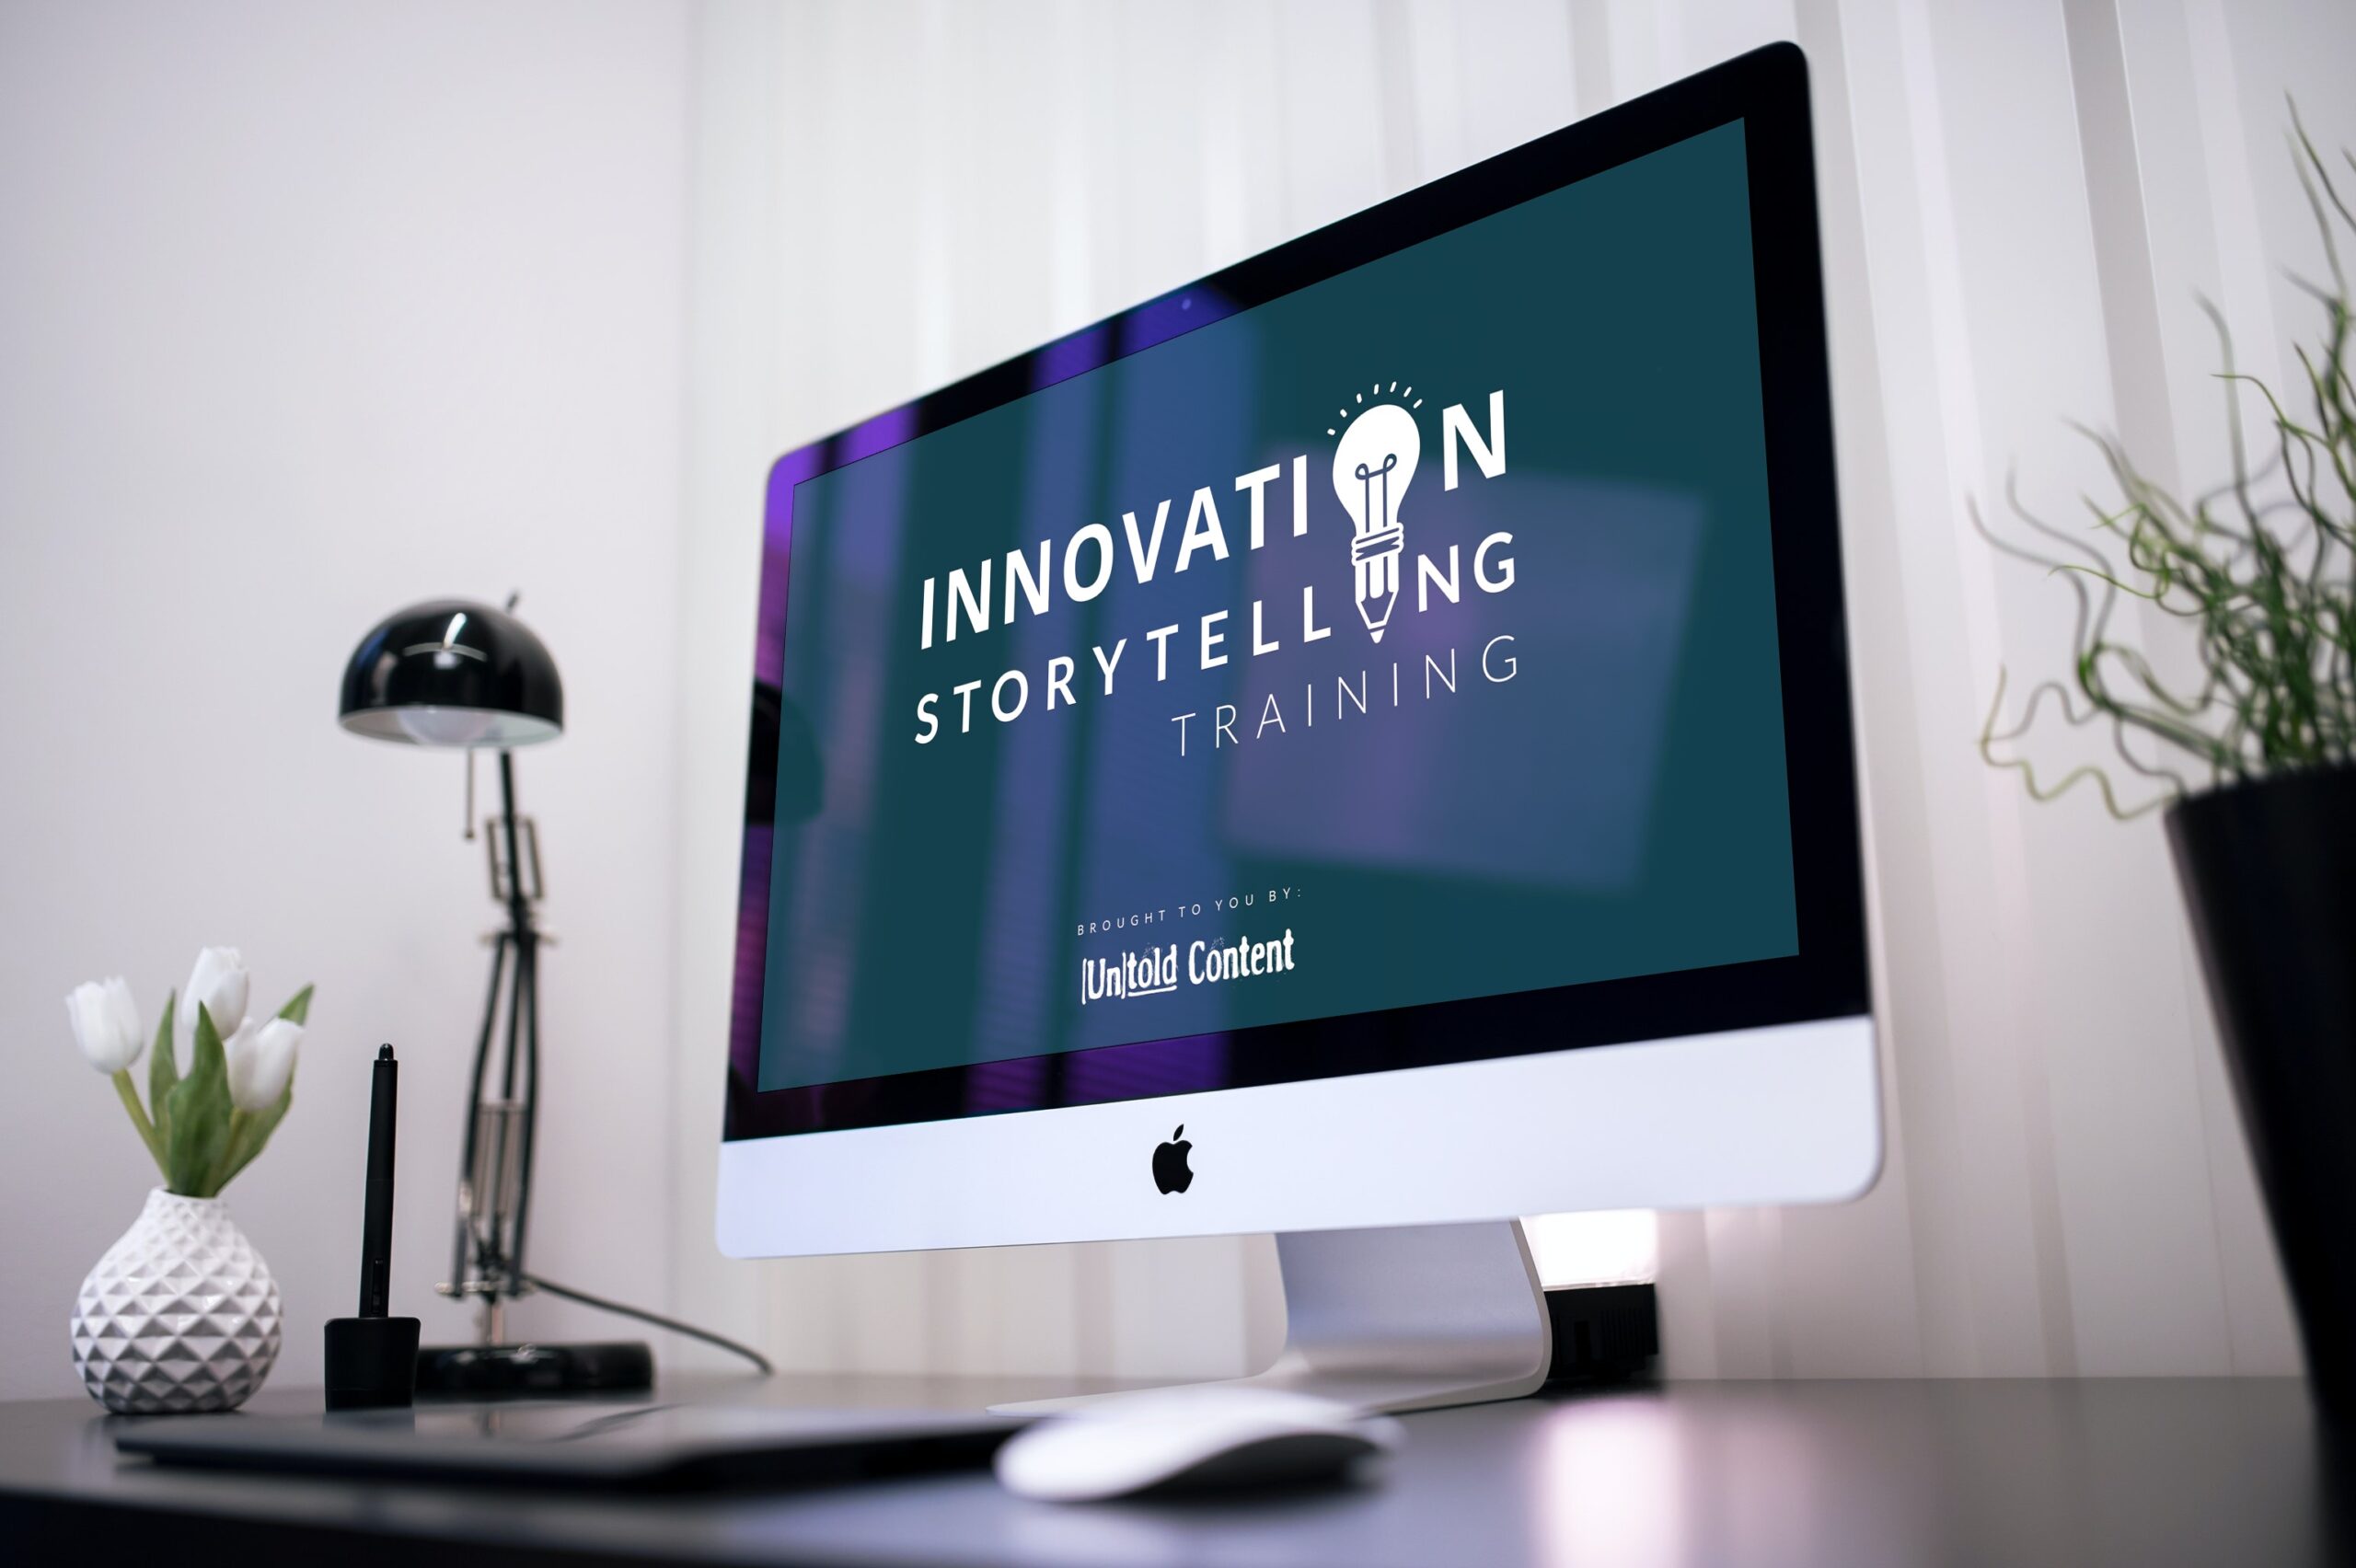 Innovation Storytelling Training